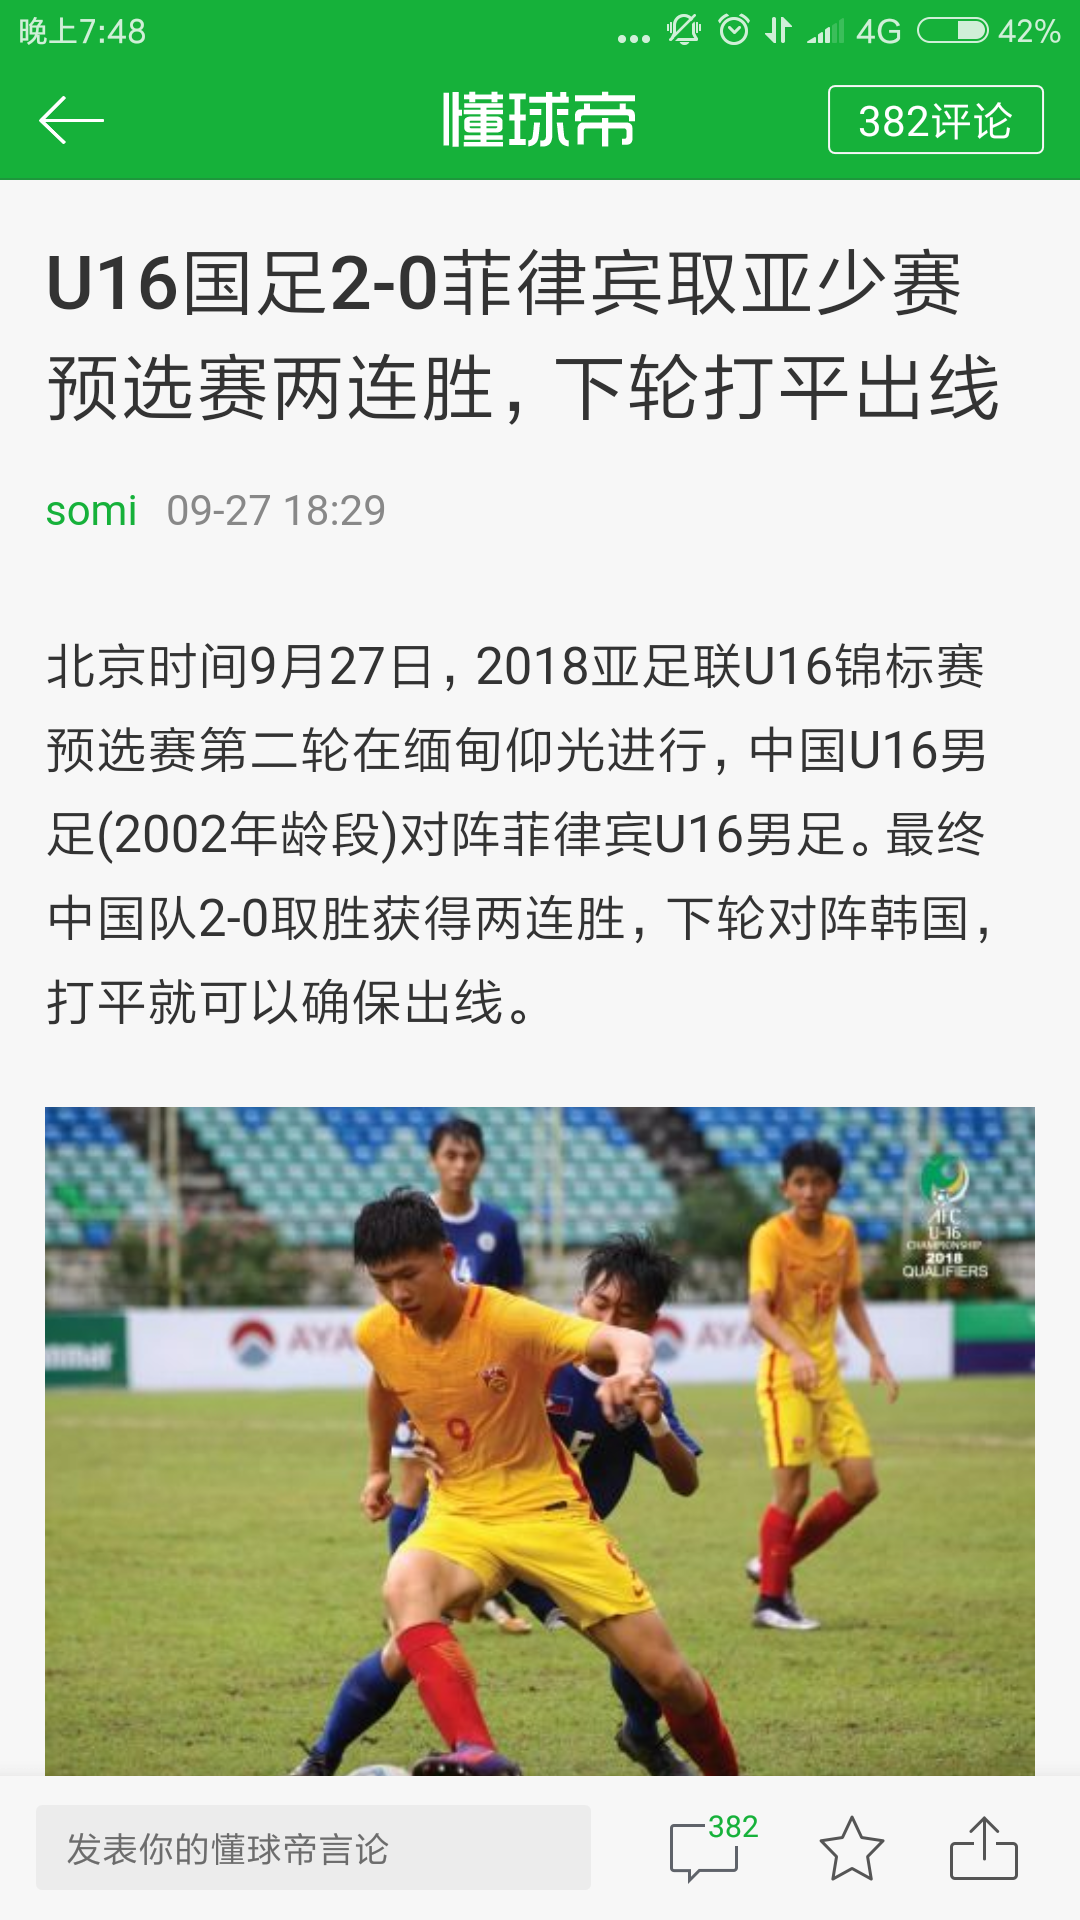 2018亚少赛16强出炉,国少无缘 - 中国U16|懂球